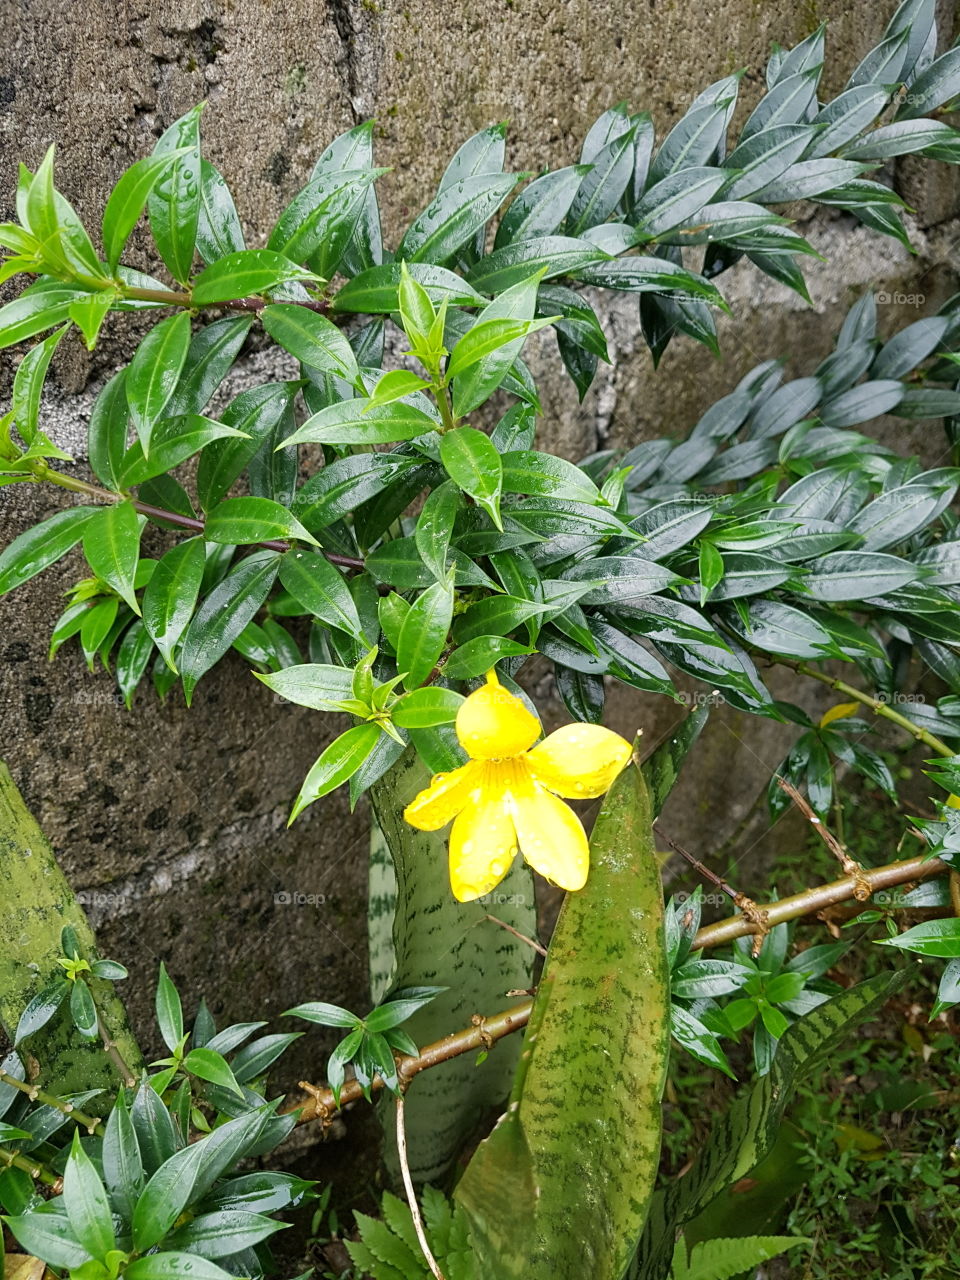 Yellow bell flower